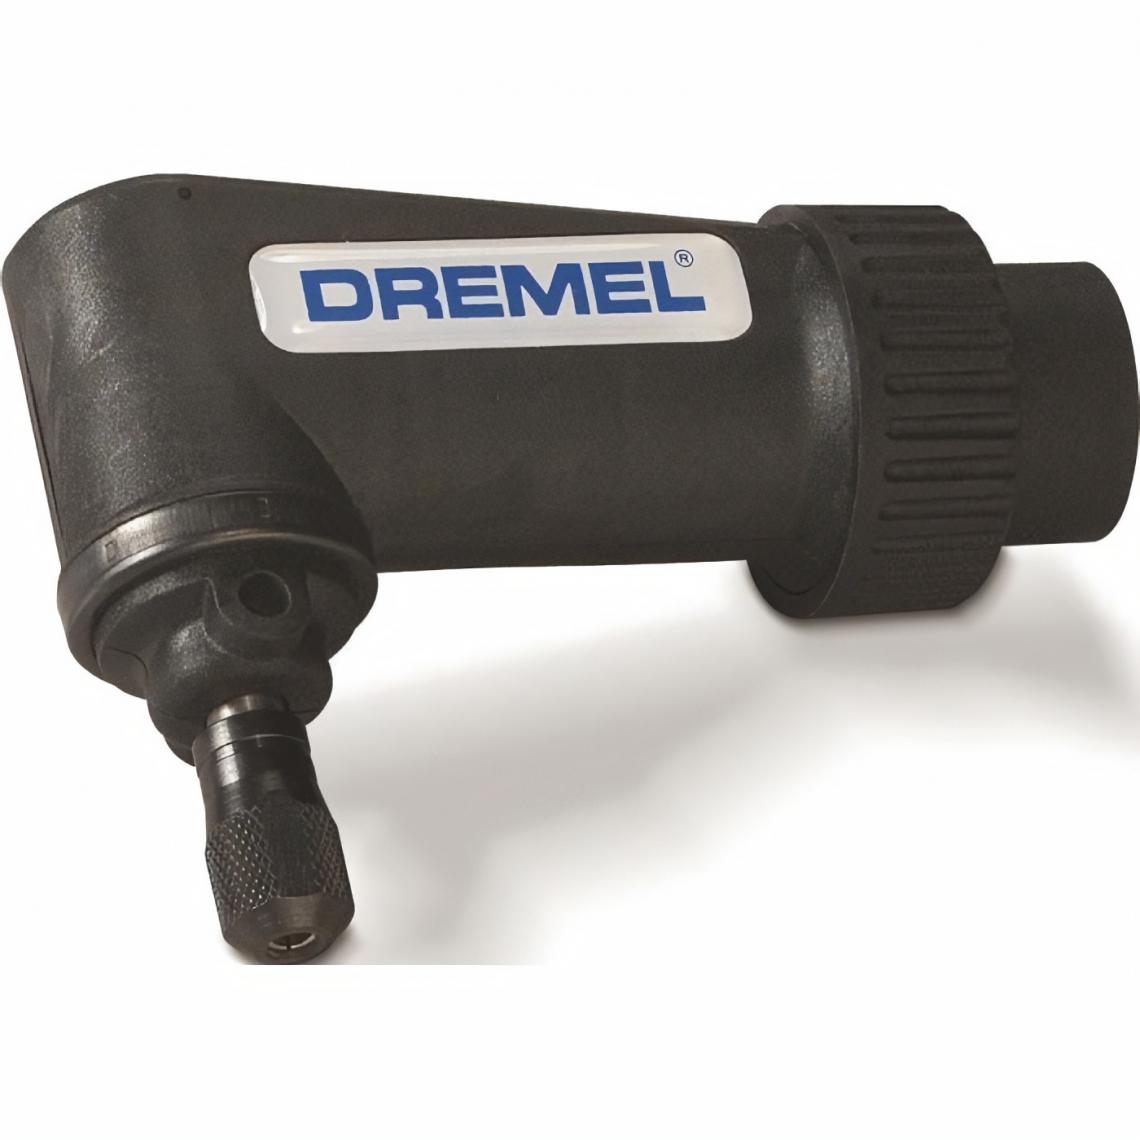 Dremel - DREMEL 575 Renvoi d'angle a 45° pour outils multi-usages - Accessoires sciage, tronçonnage